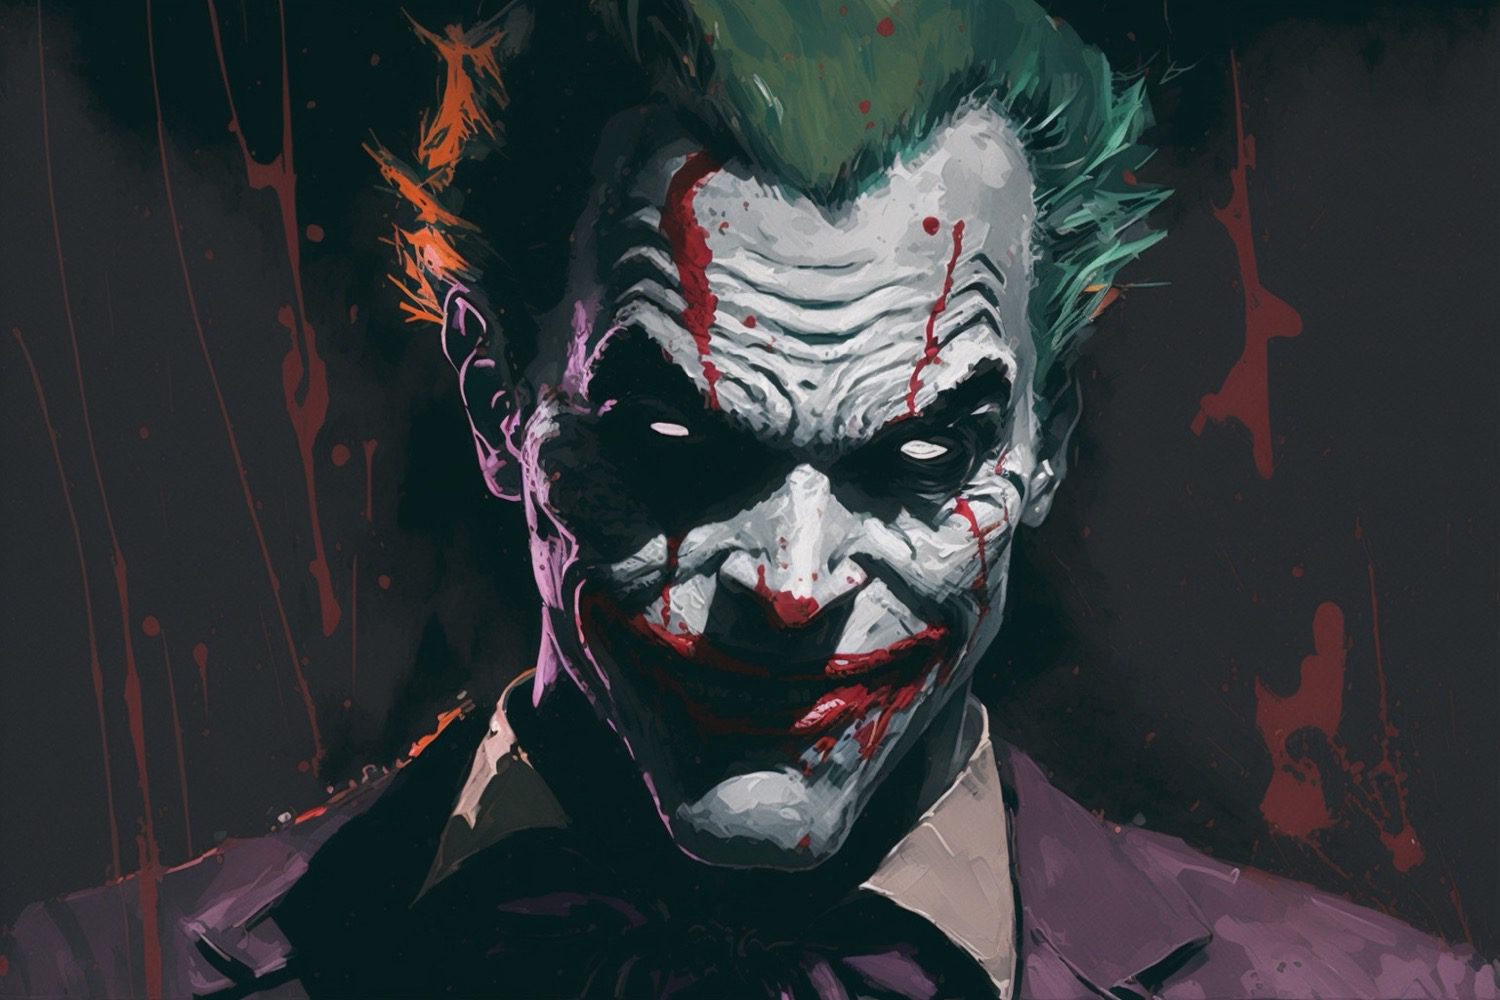 Scary Drawings Of Joker